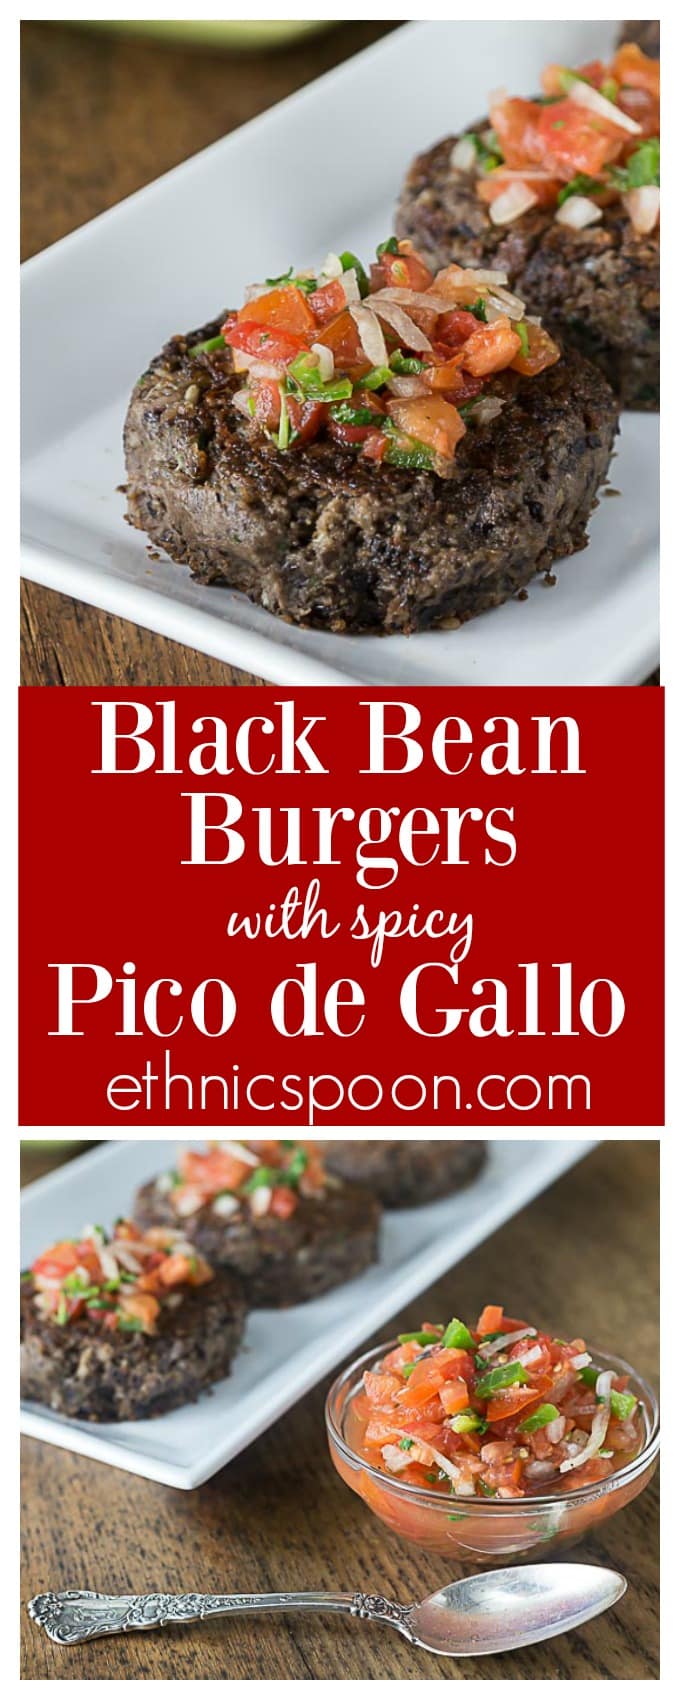 Black Bean Burgers with Spicy Pico de Gallo - Analida's Ethnic Spoon